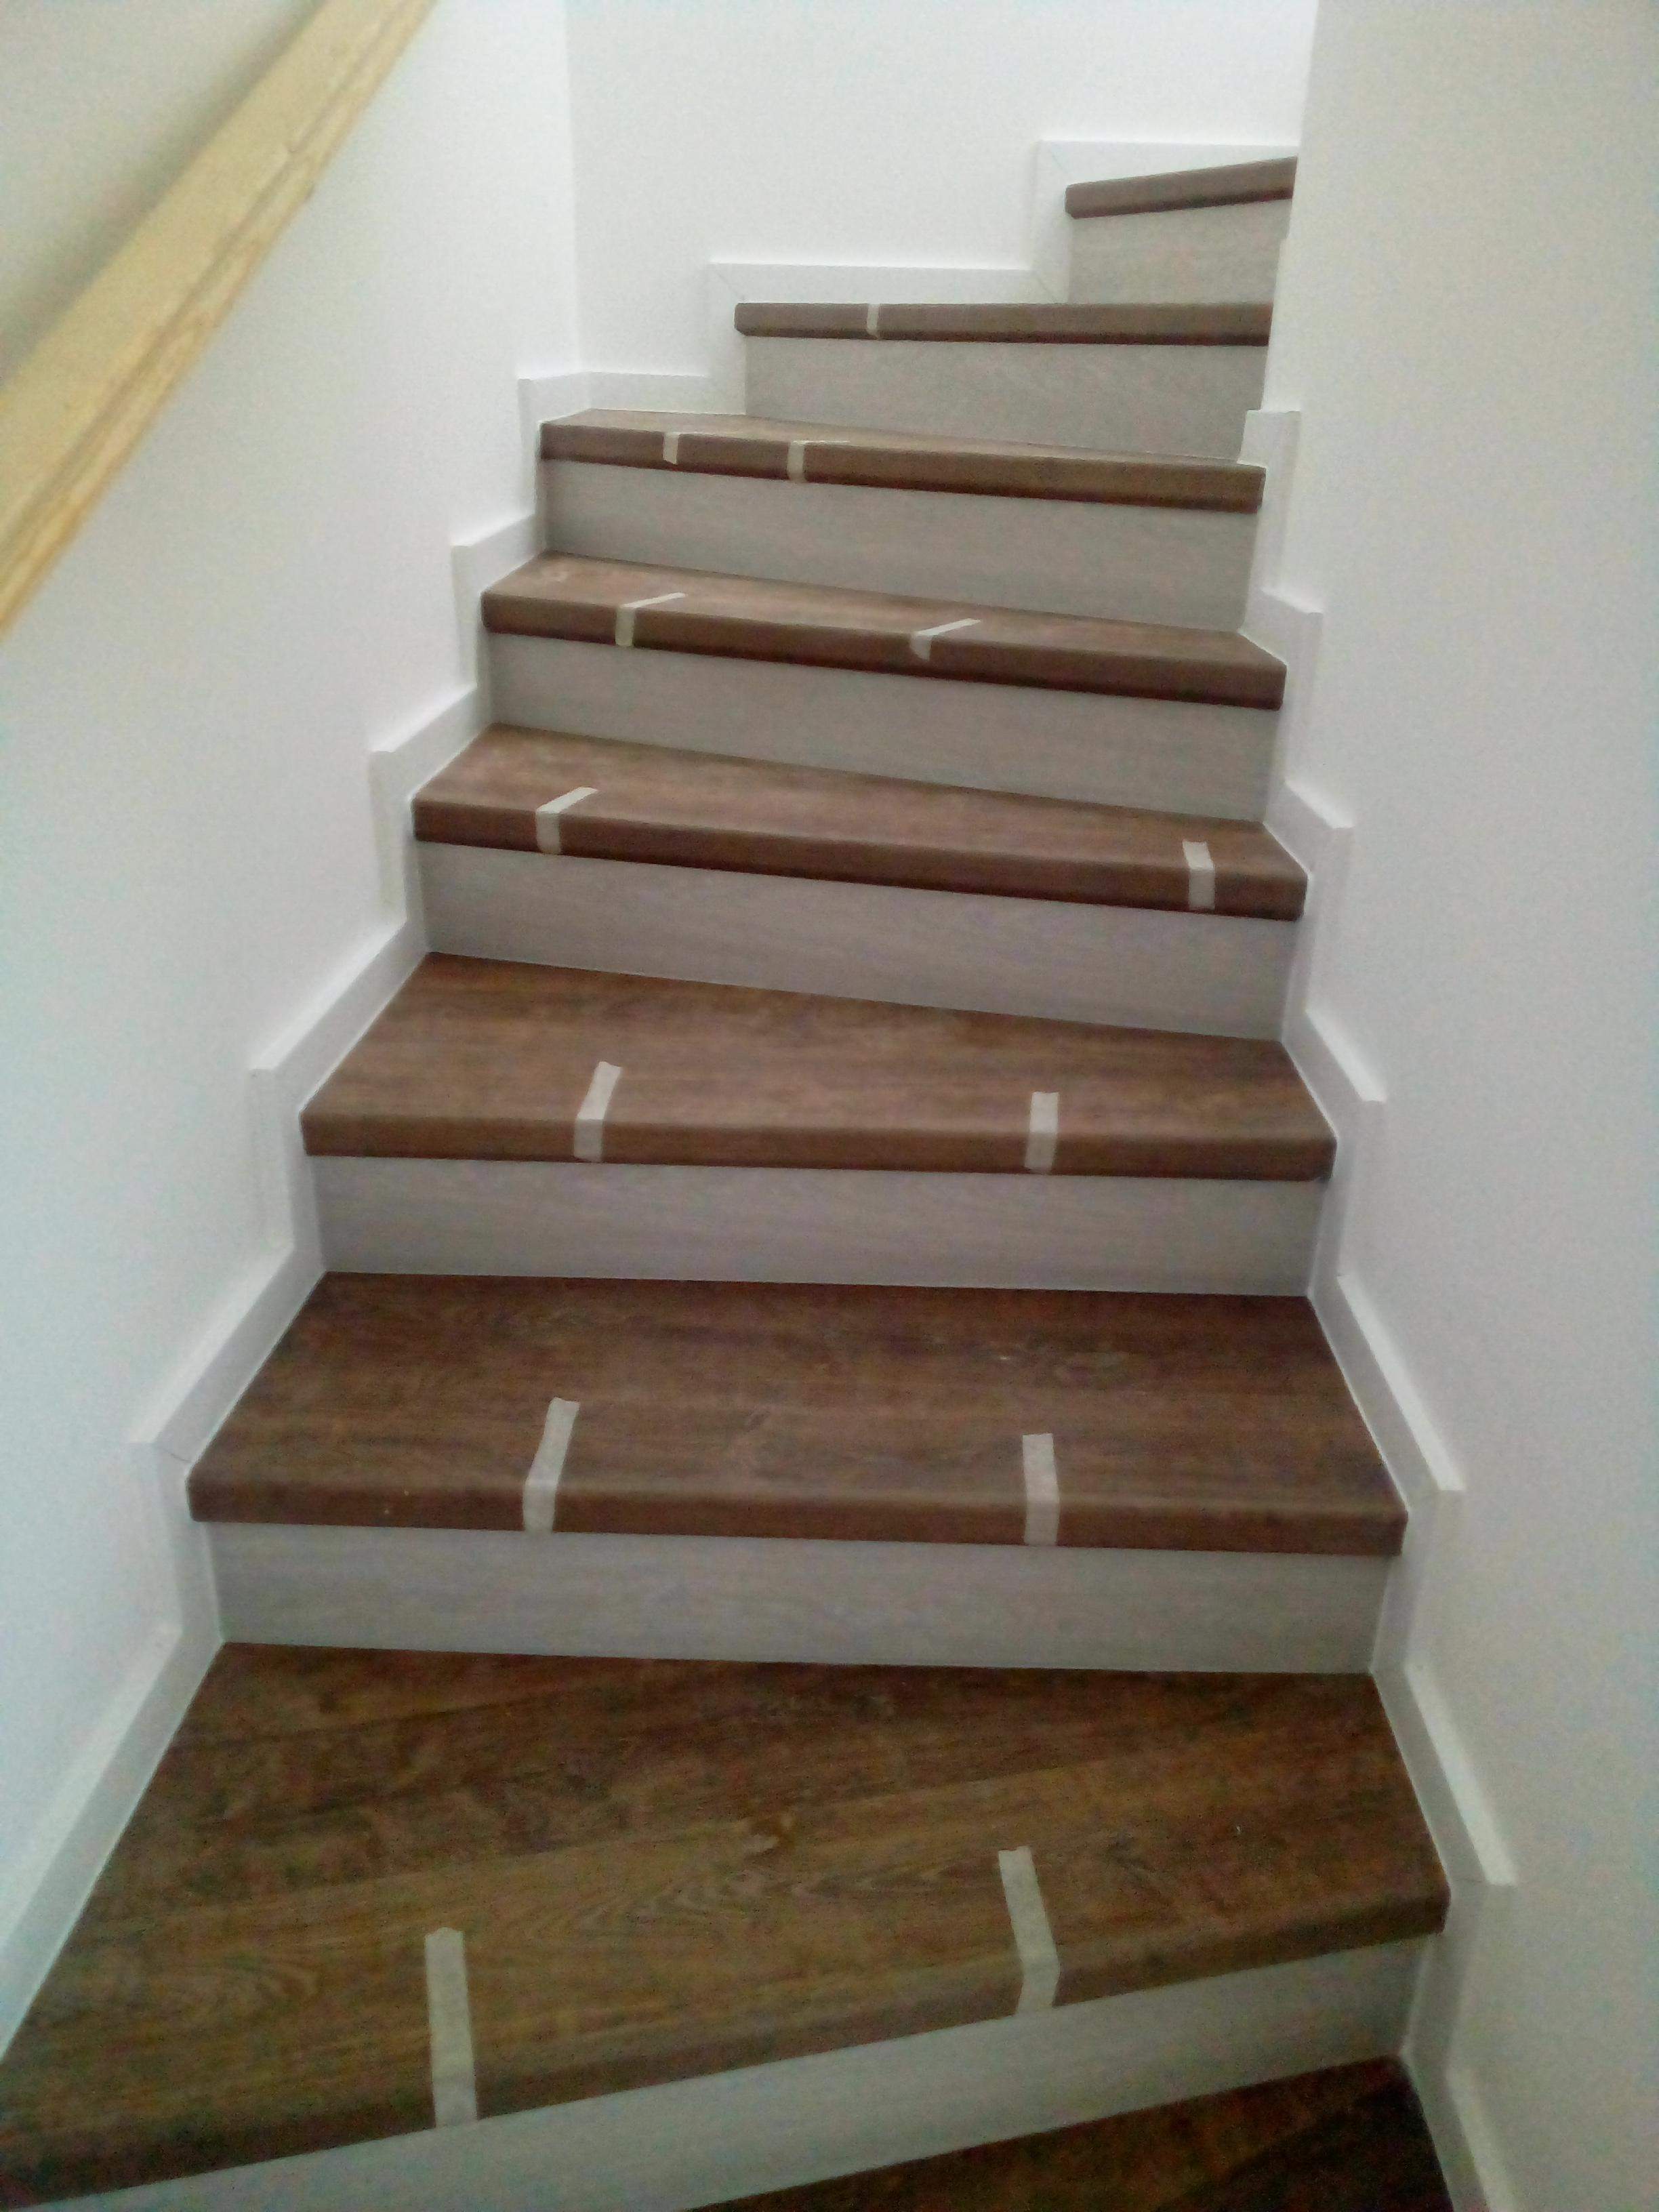 Gipszbeton lépcső- Quick Step (laminált padló) lépcső rendszerrel burkolva.